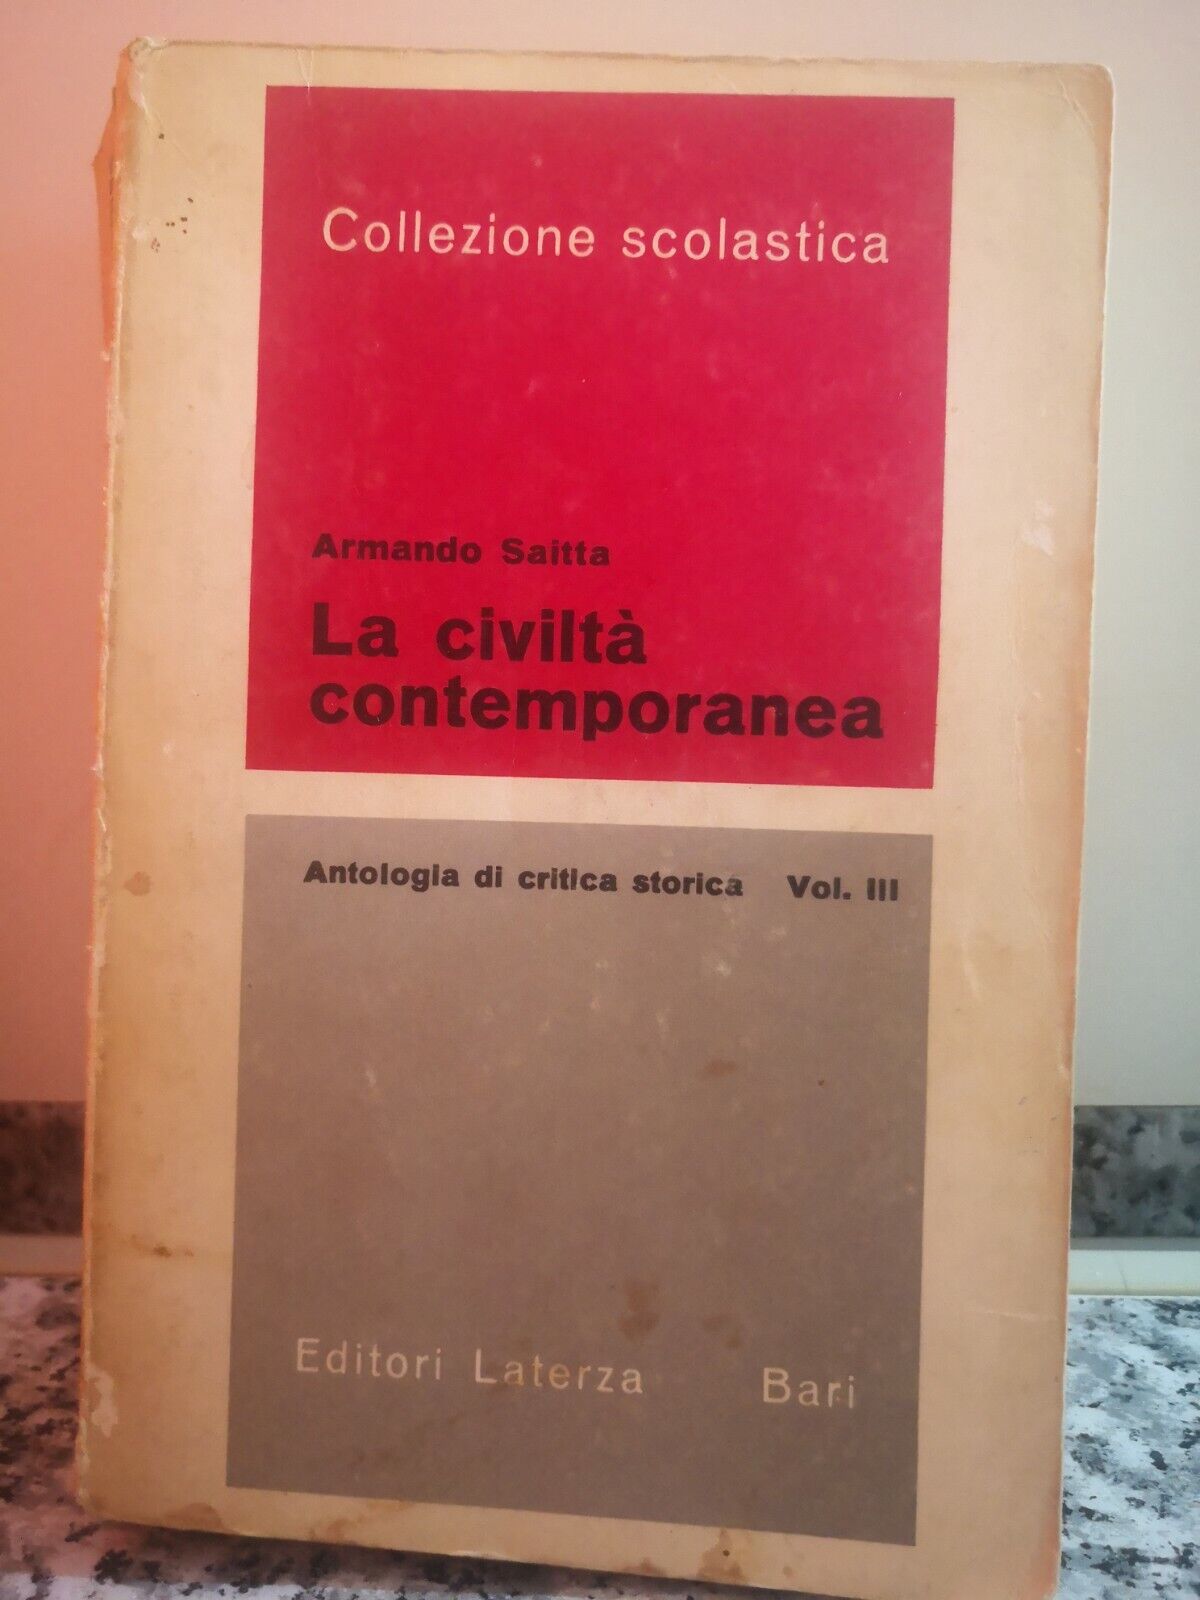   La civilt? contemporanea  di Armando Saitta,  1967,  Laterza -f